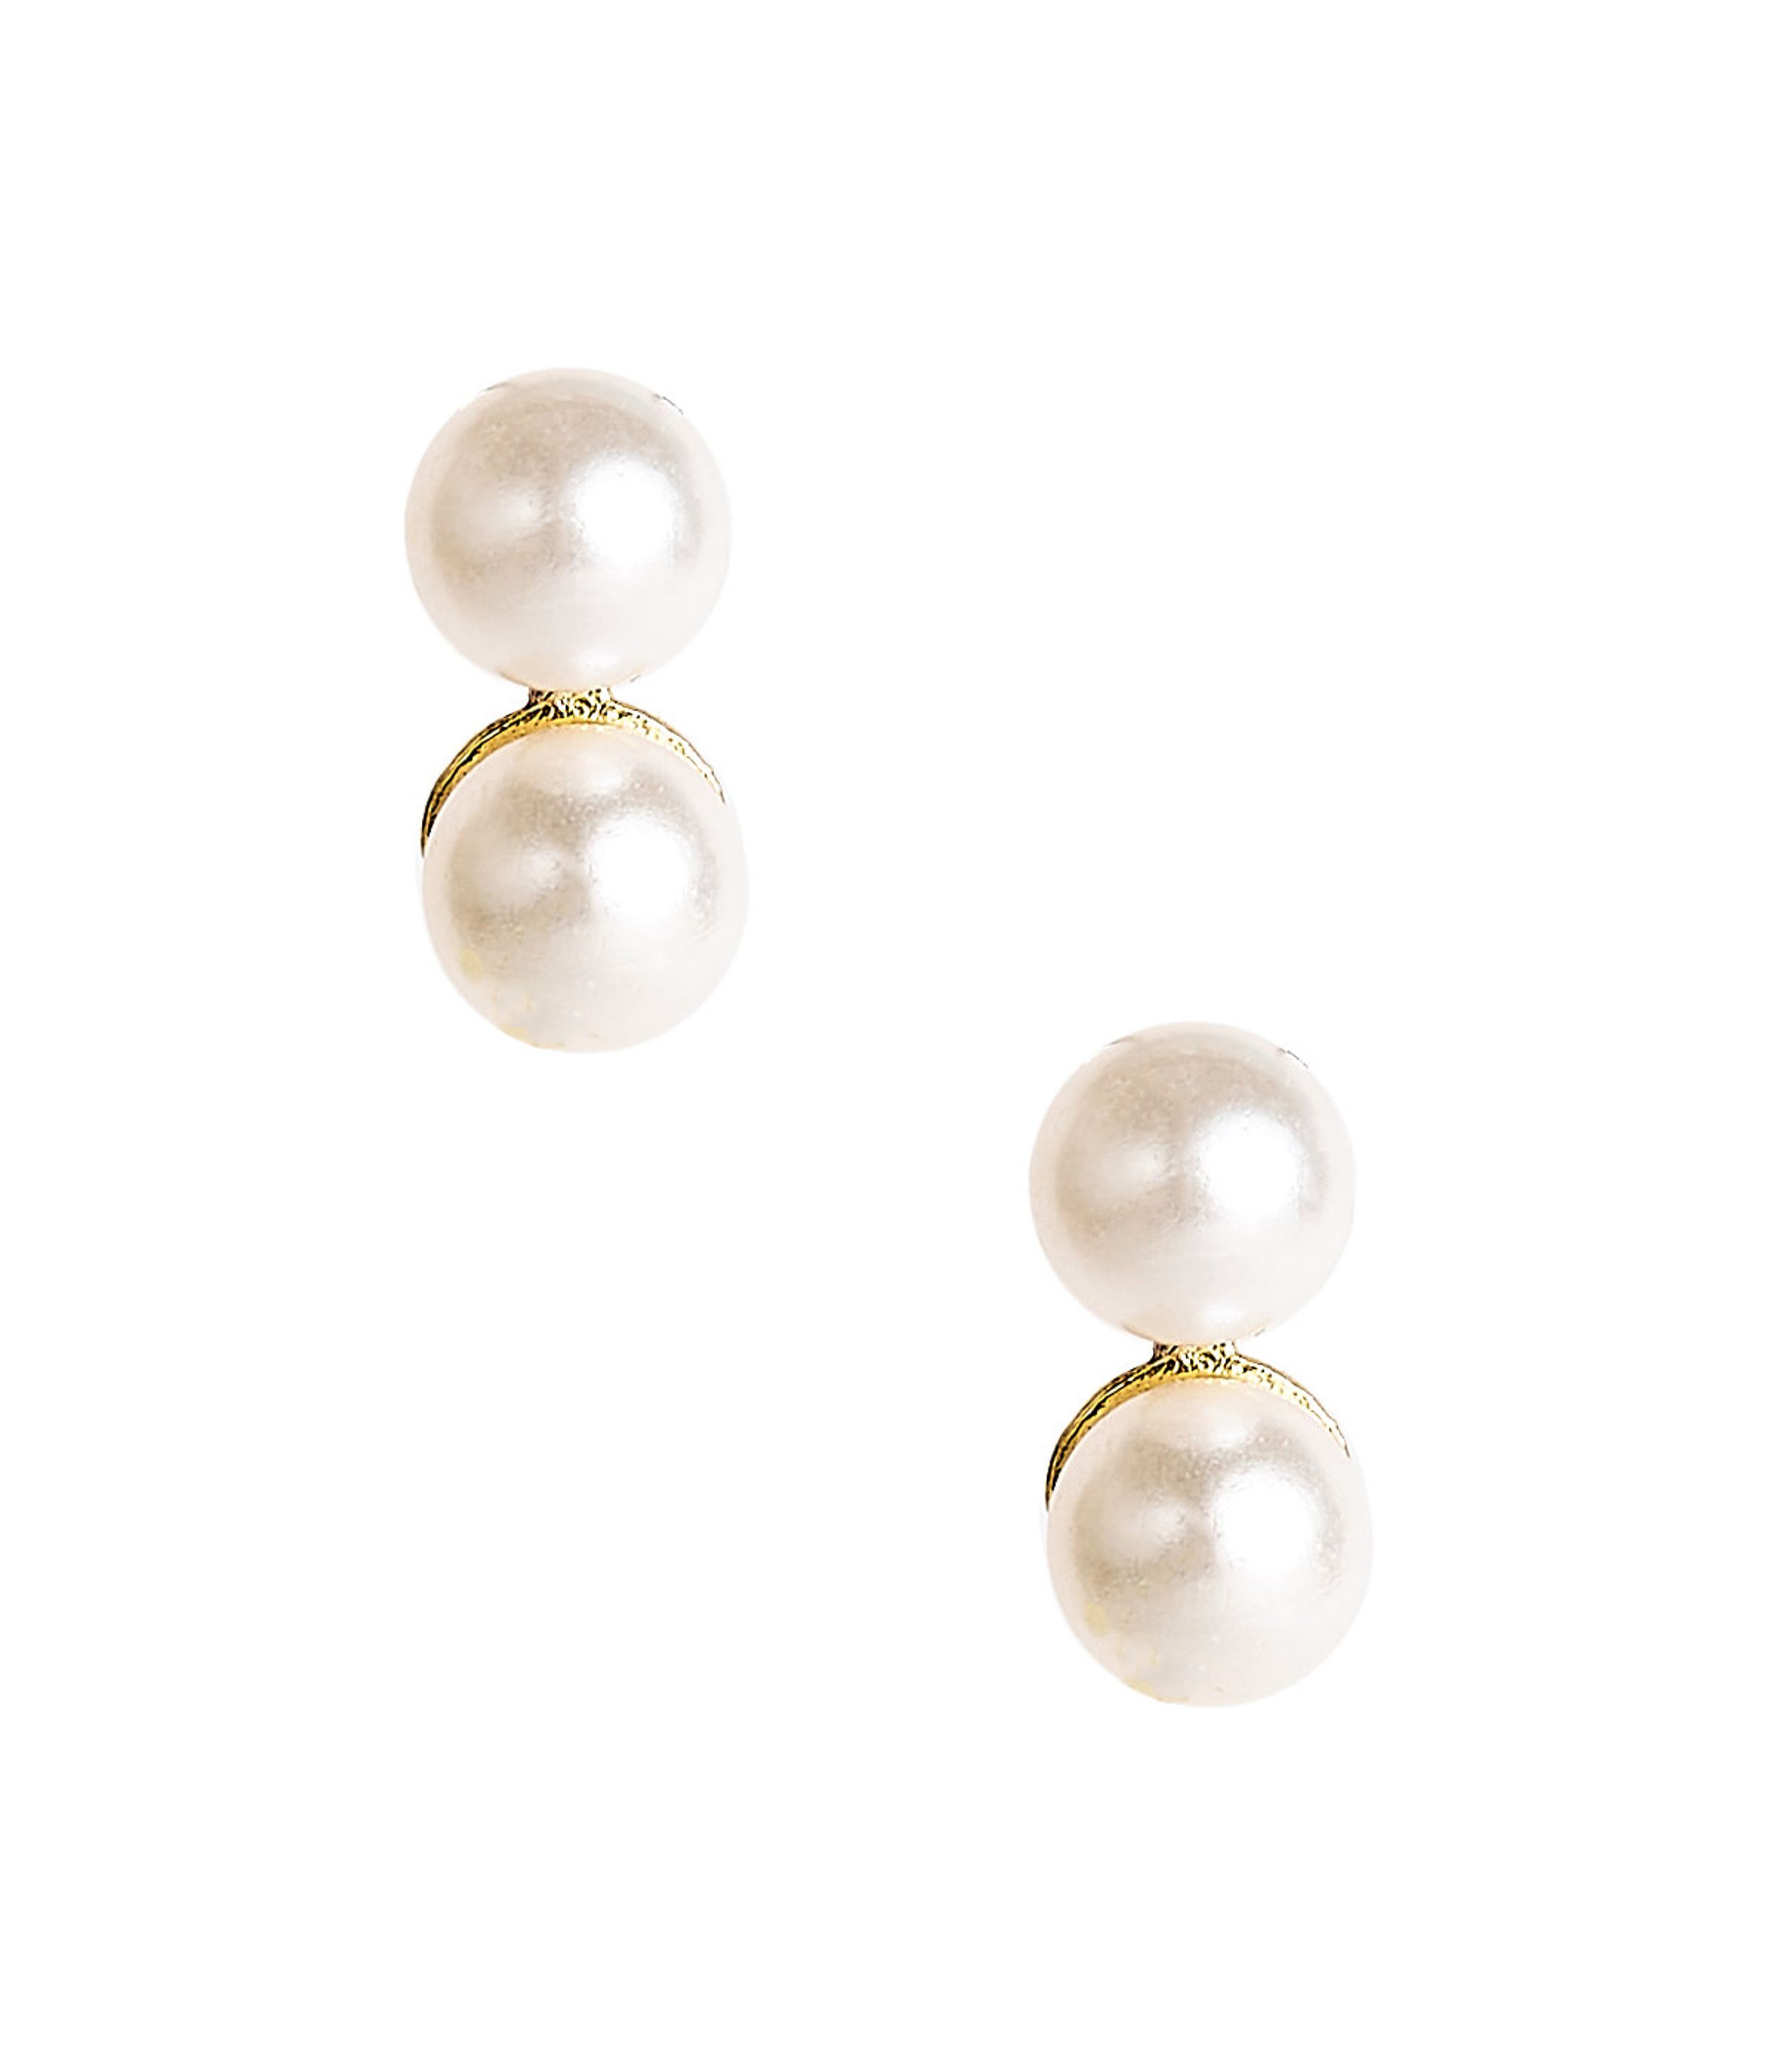 Belle - Double Pearl earrings | Lisi Lerch Inc